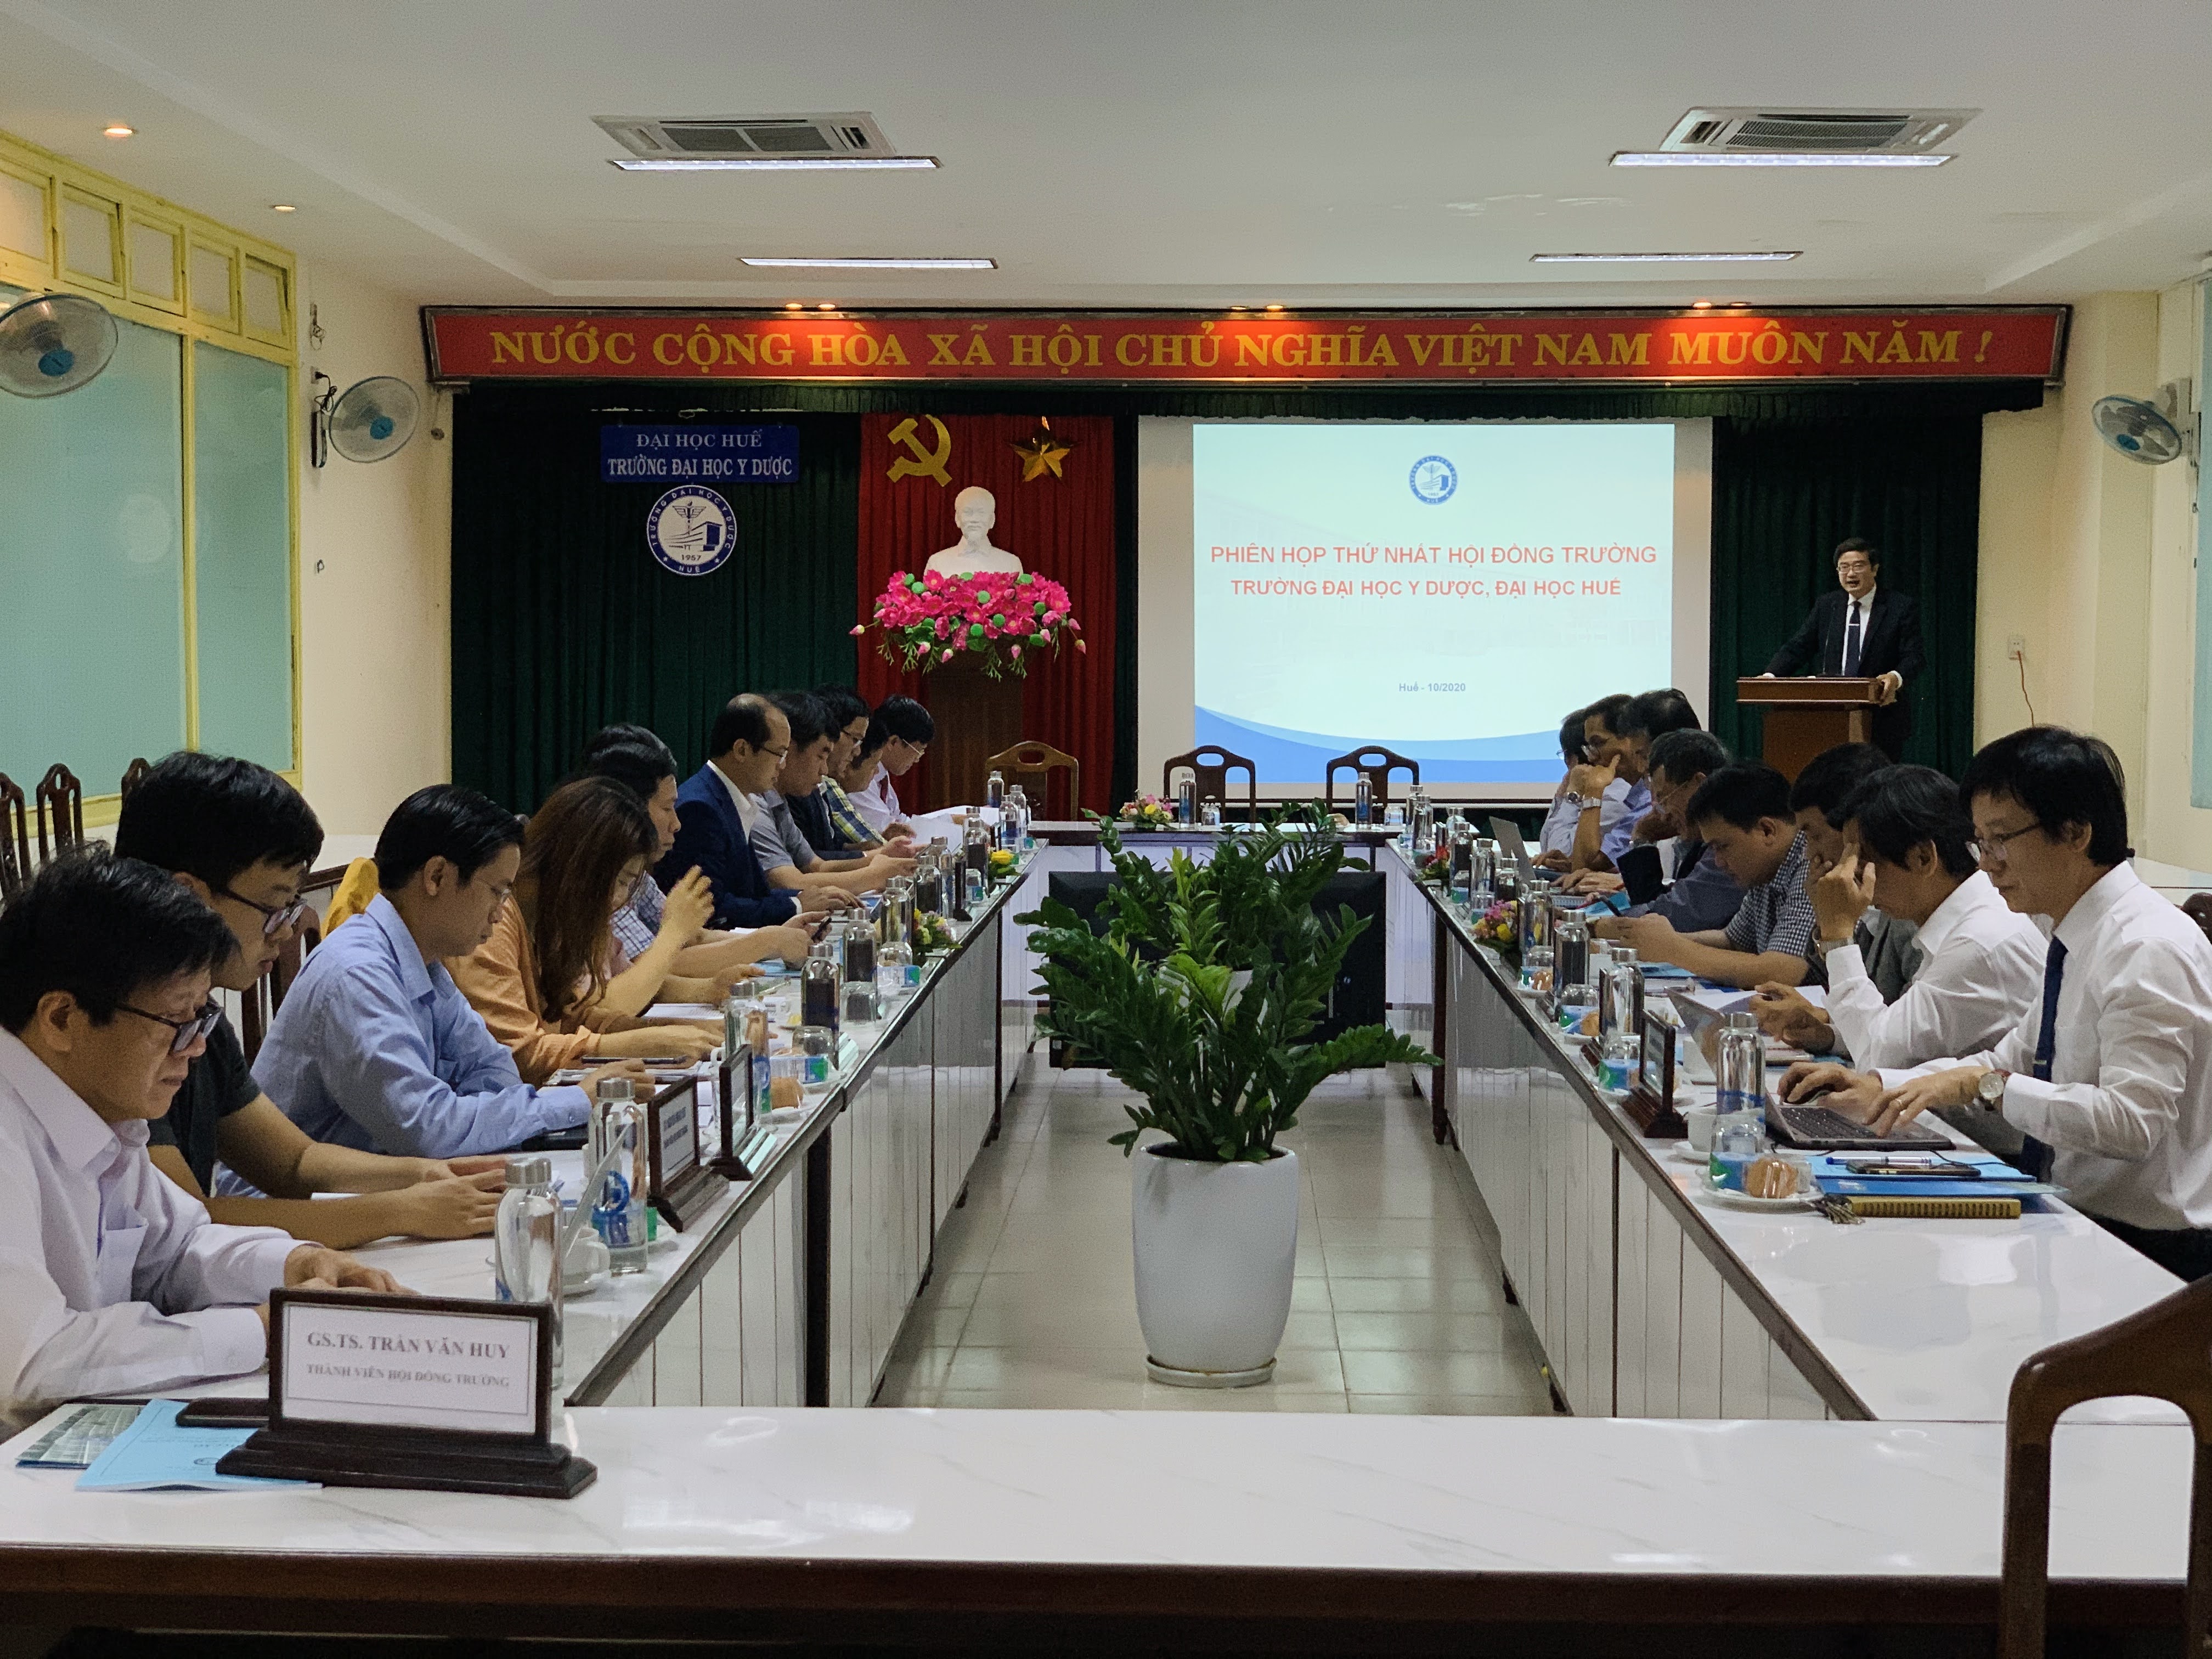 Phiên họp thứ nhất Hội đồng trường Trường Đại học Y Dược Huế nhiệm kỳ 2020-2025.